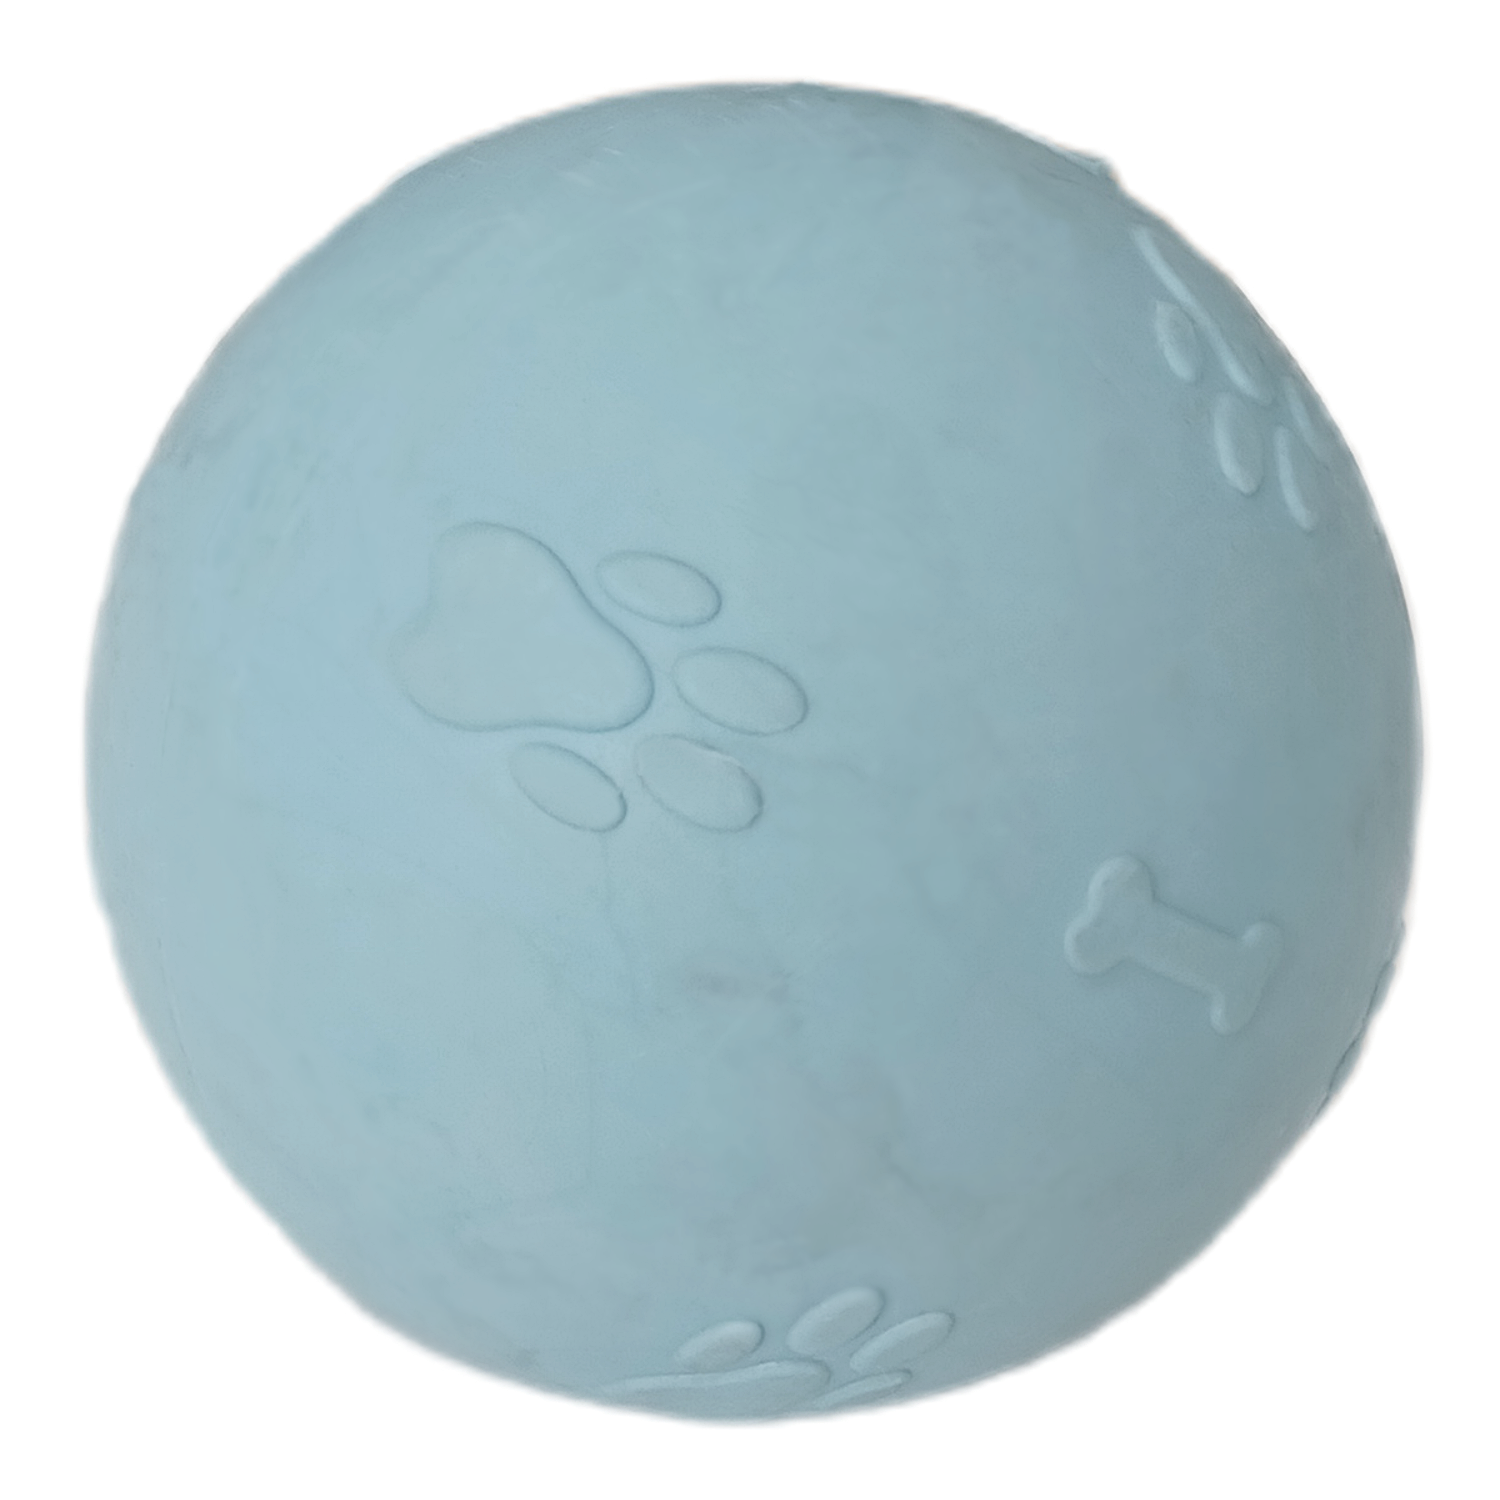 CLZ205 Pati Desenli Sert Köpek Oyun Topu 8 cm Large Açık Mavi